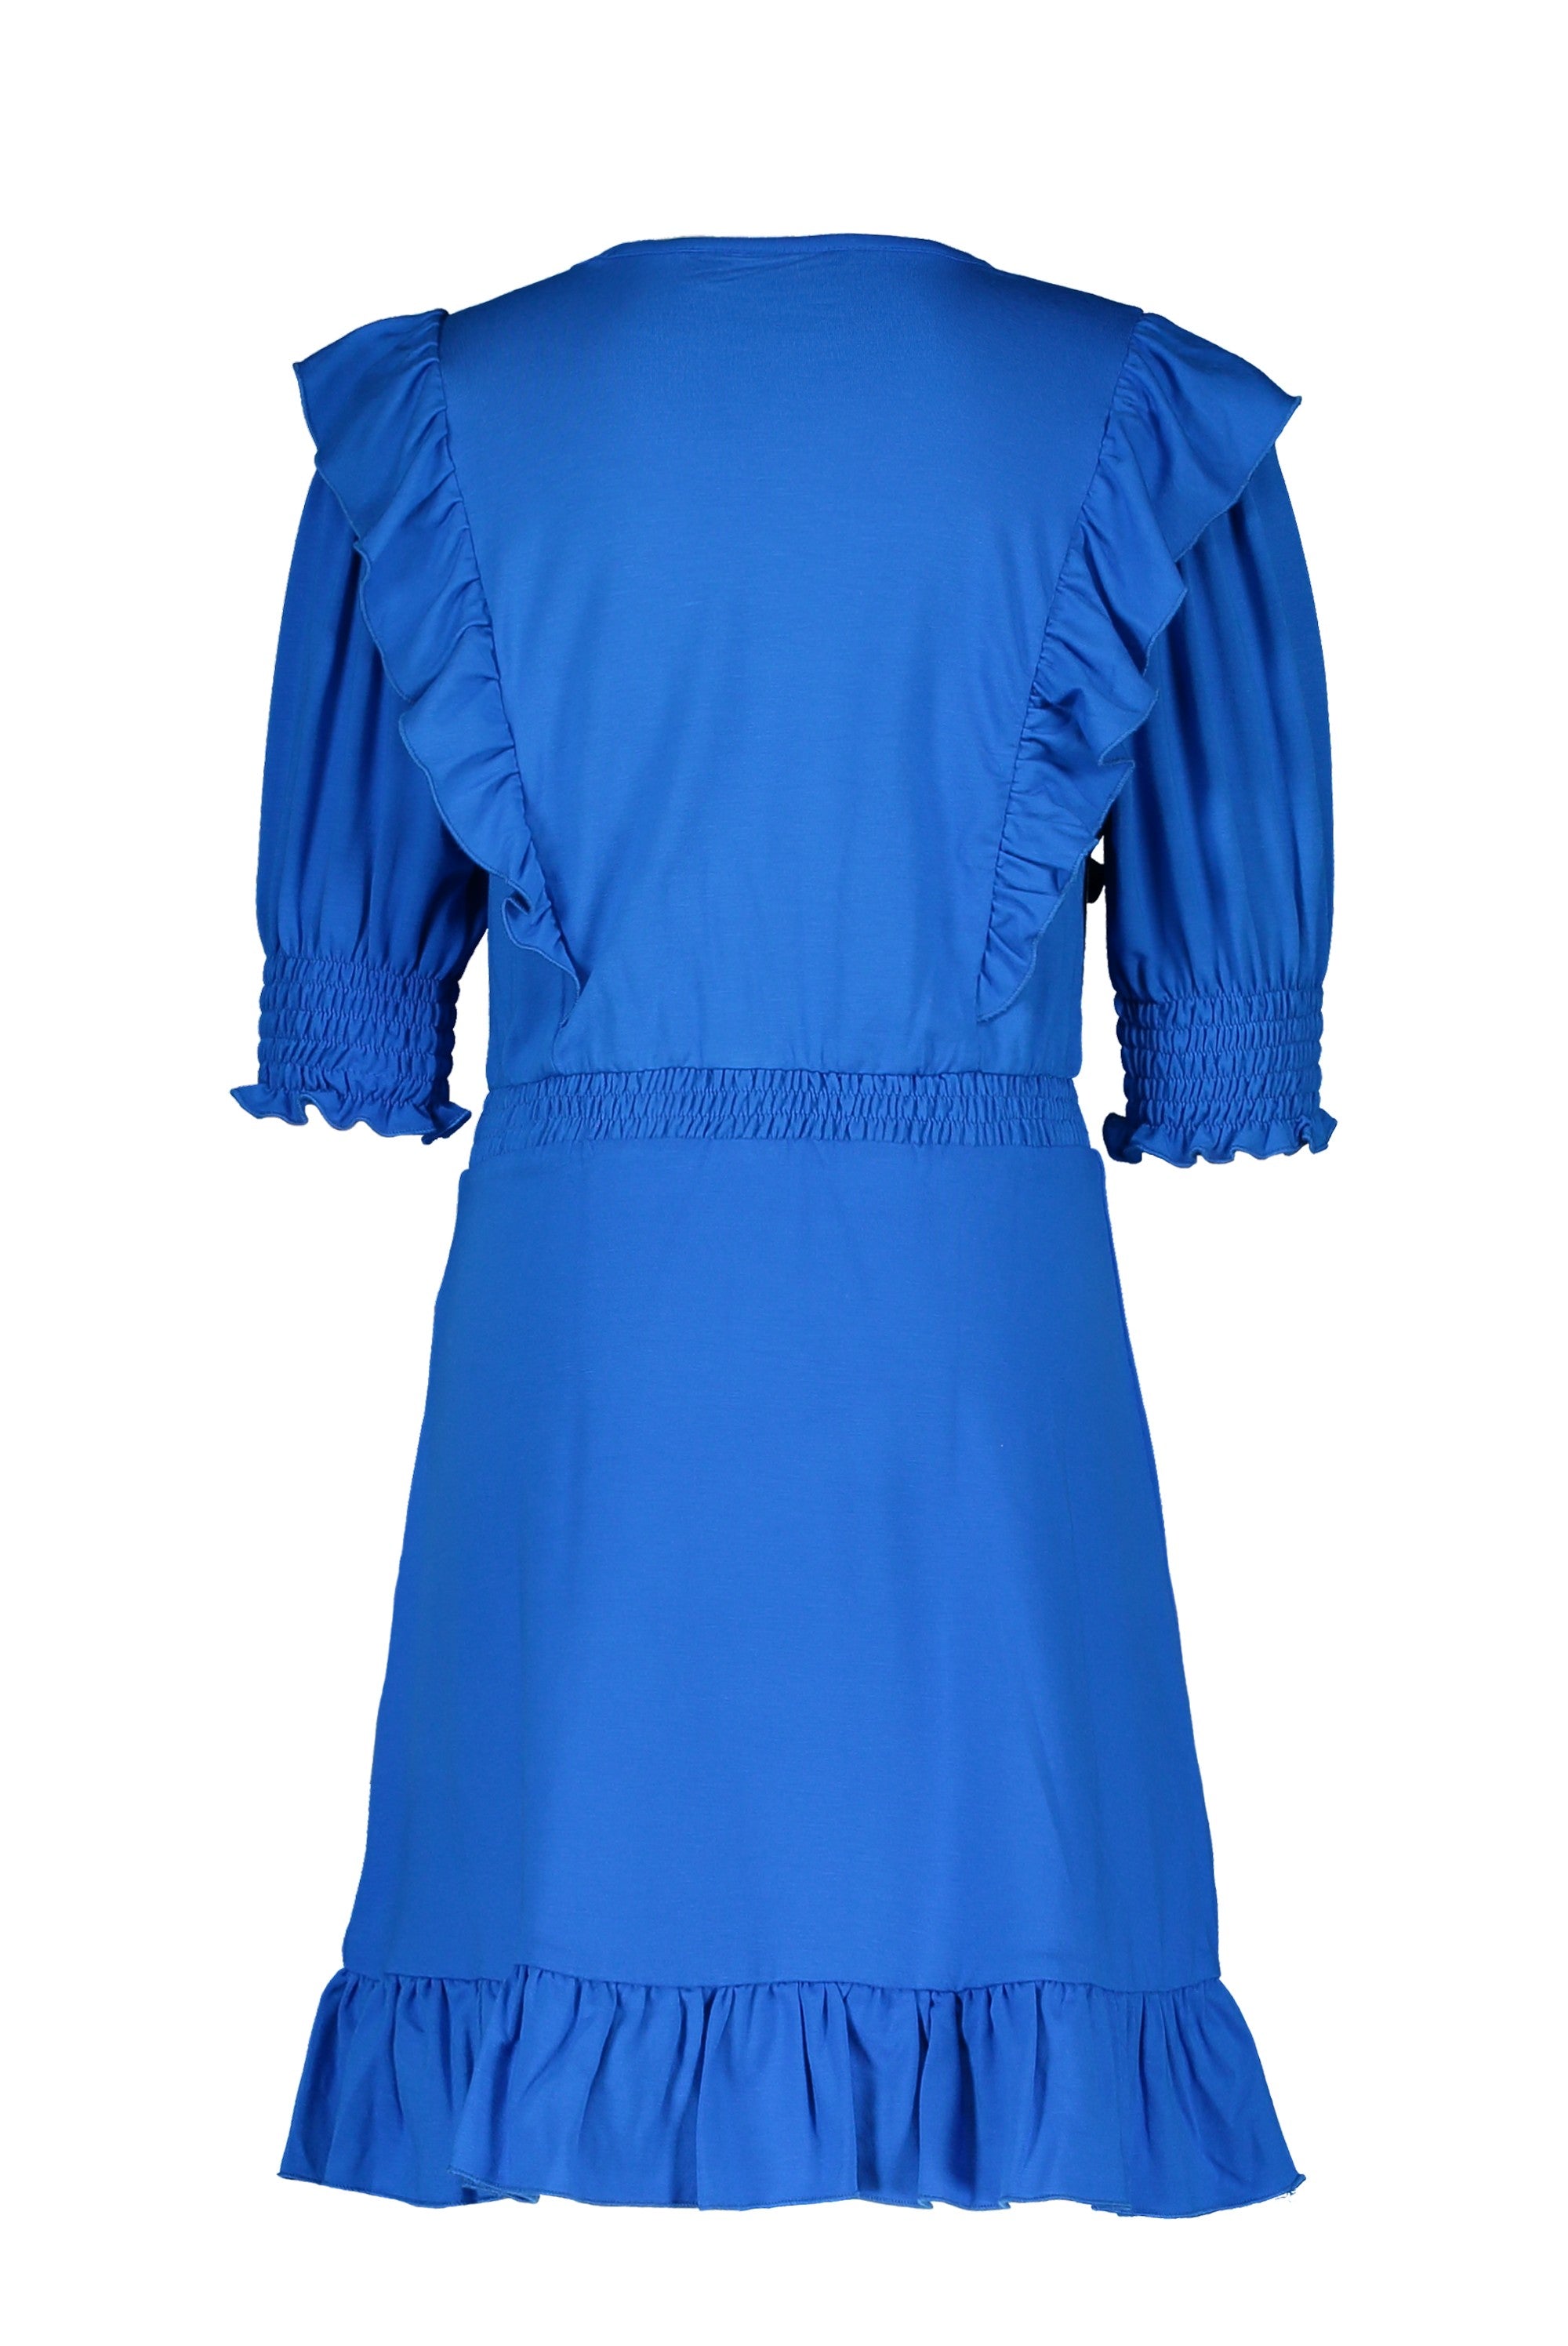 Meisjes Slub Jersey Dress van Like Flo in de kleur Cobalt in maat 152.